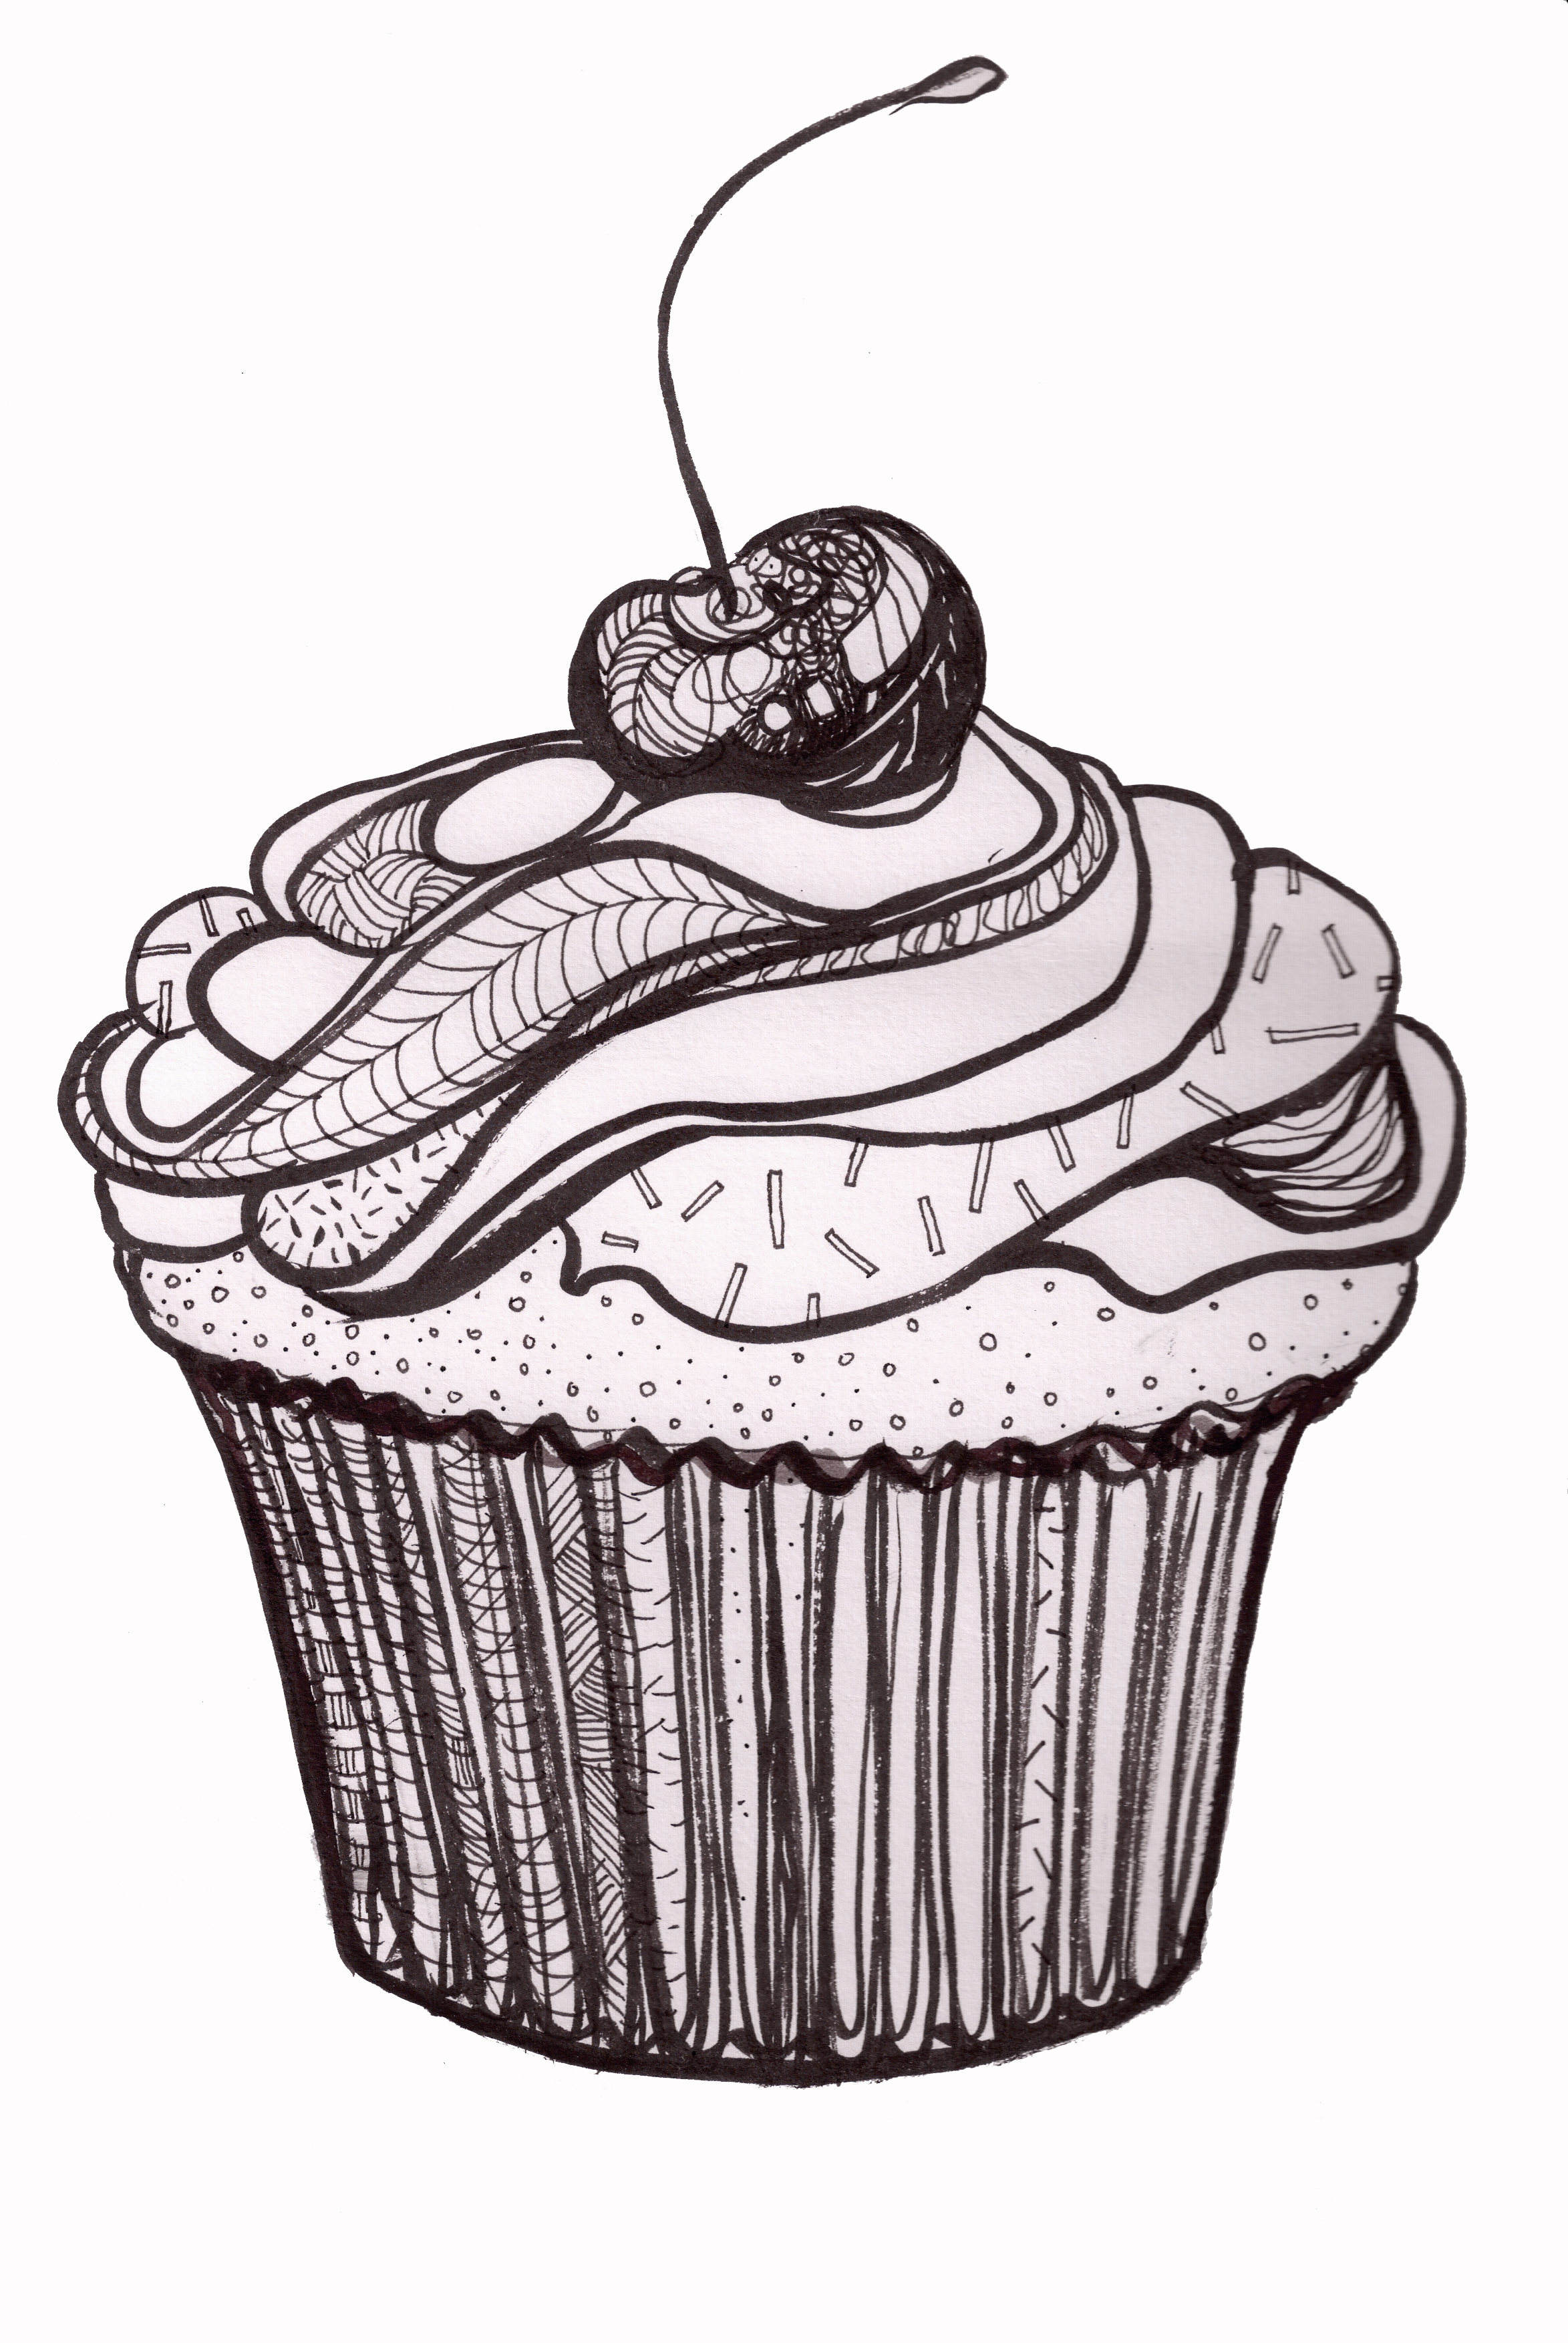 Cupcakes To Draw | customcartoonbakery.com